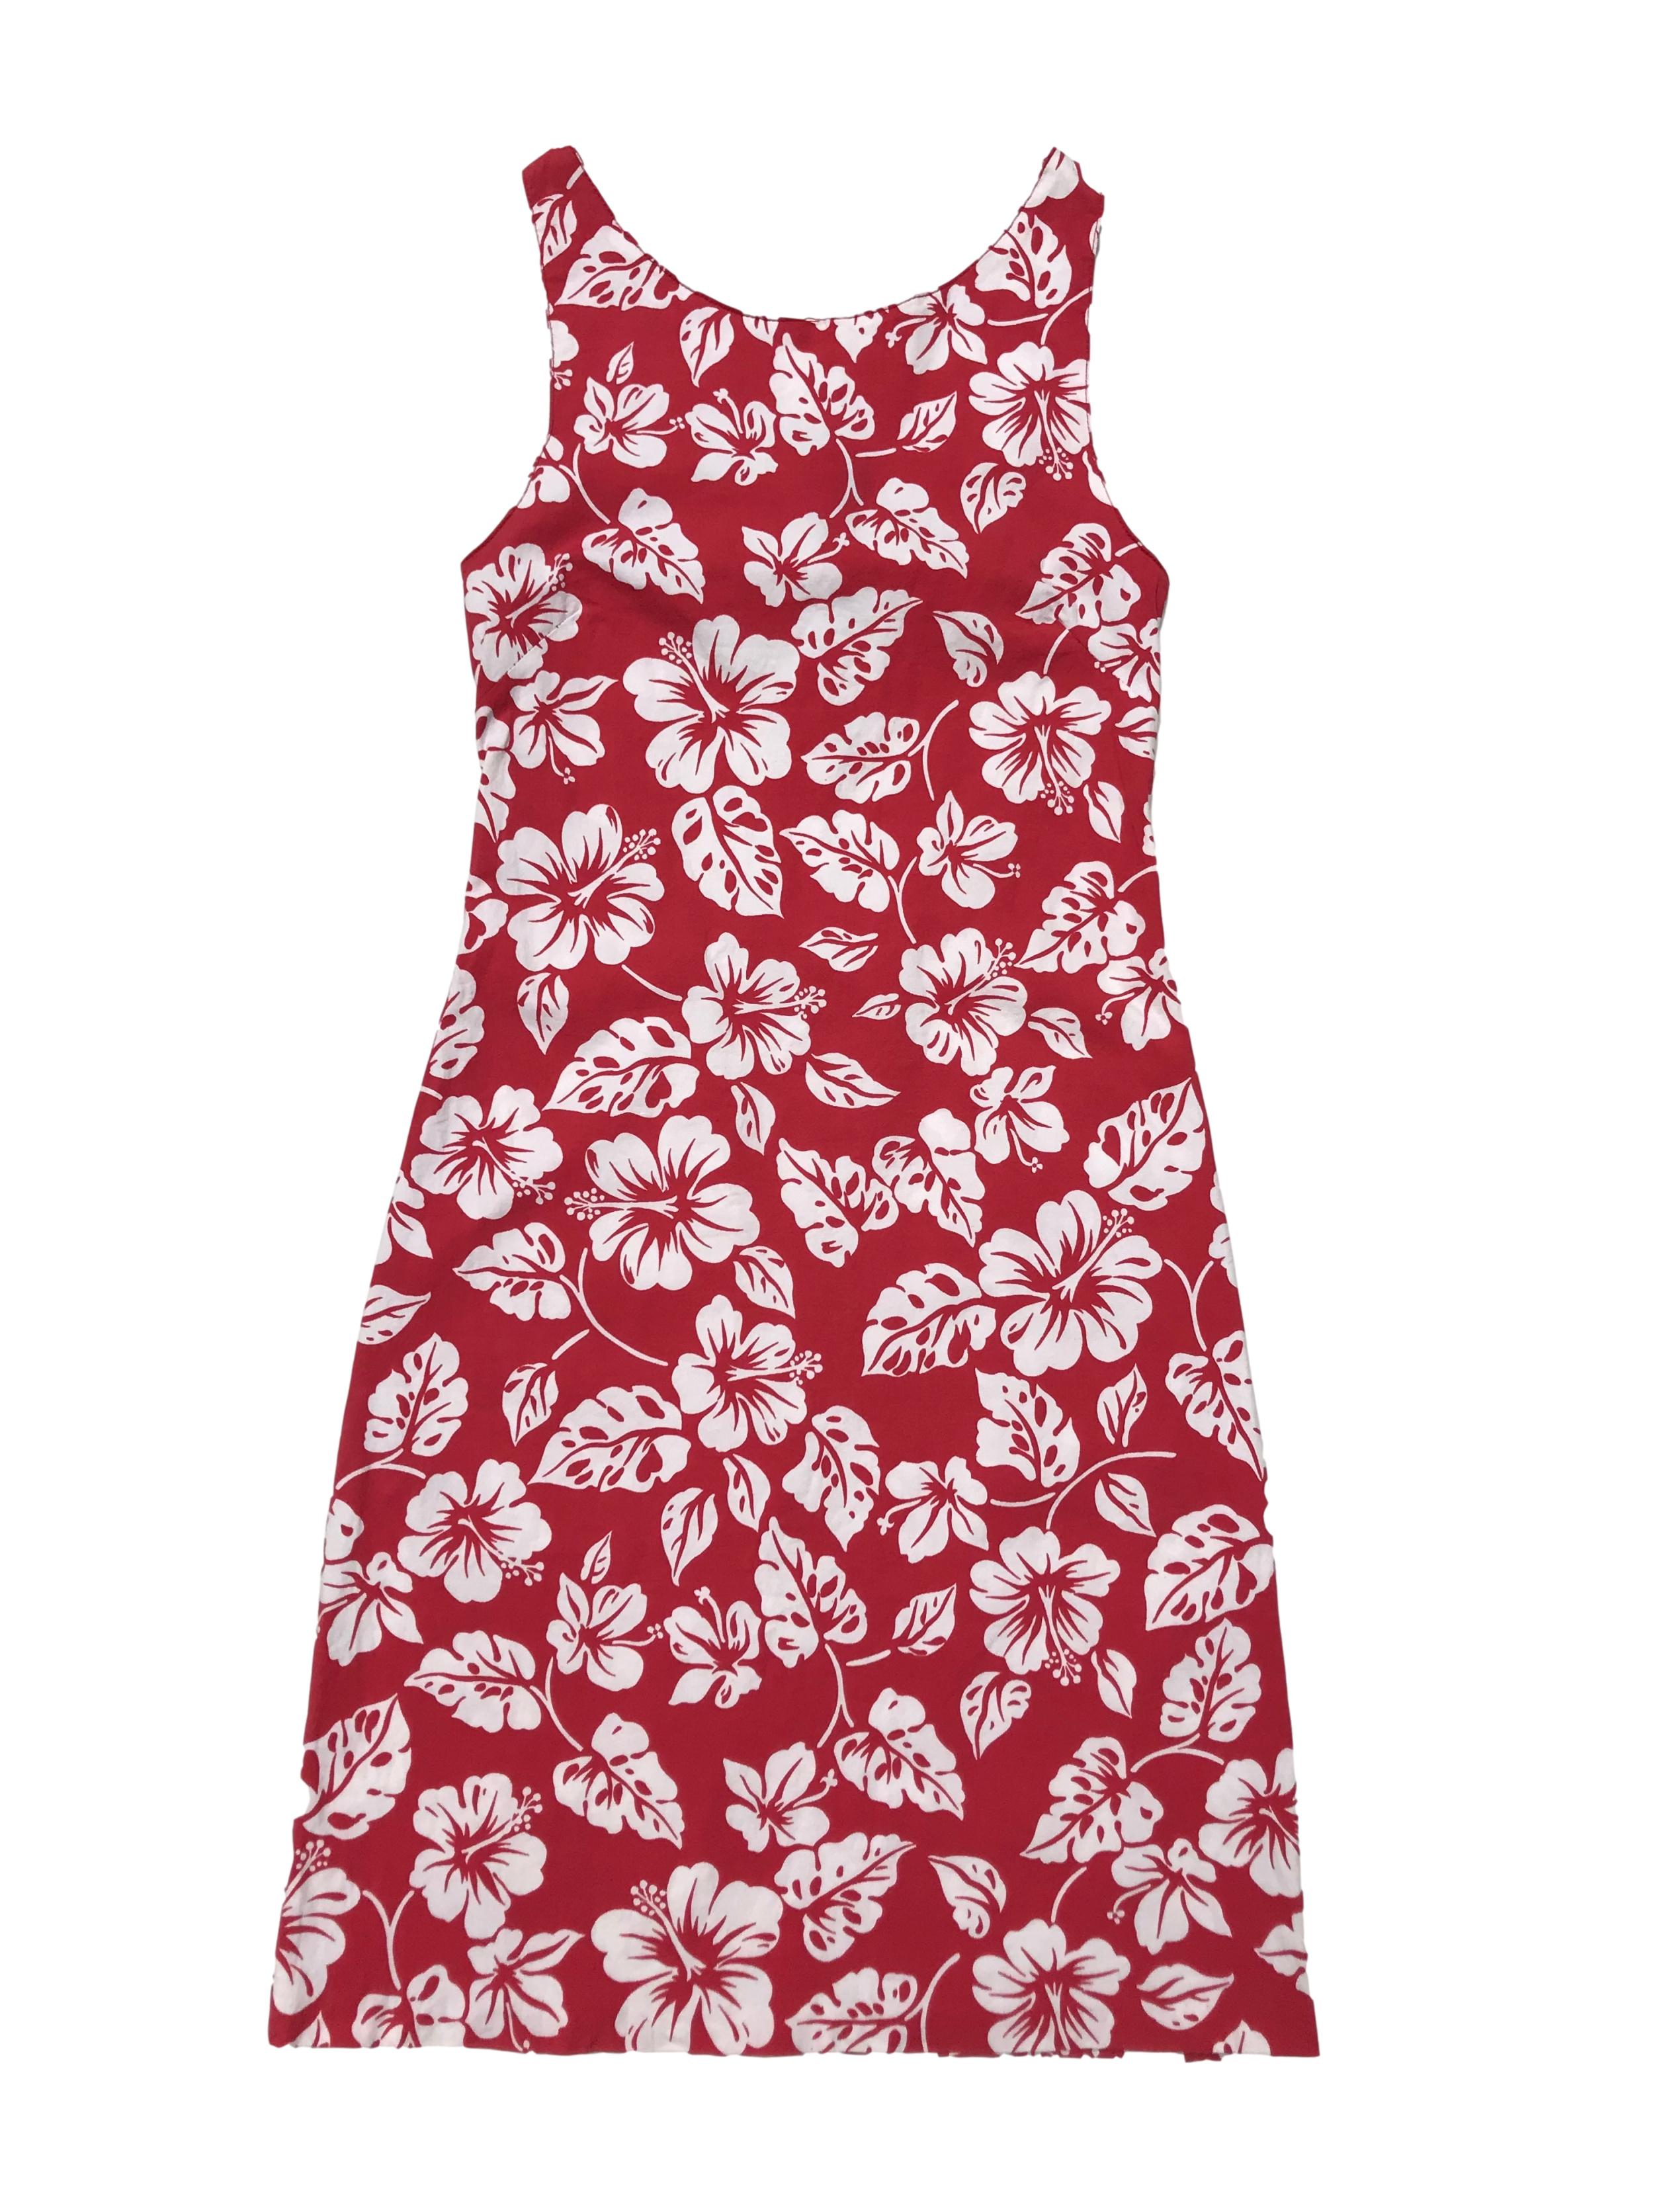 Vestido rojo ligeramente stretch con print tropical blanco, escote en la espalda con lazo, tela tipo algodón camisa con spandex. Largo 88cm